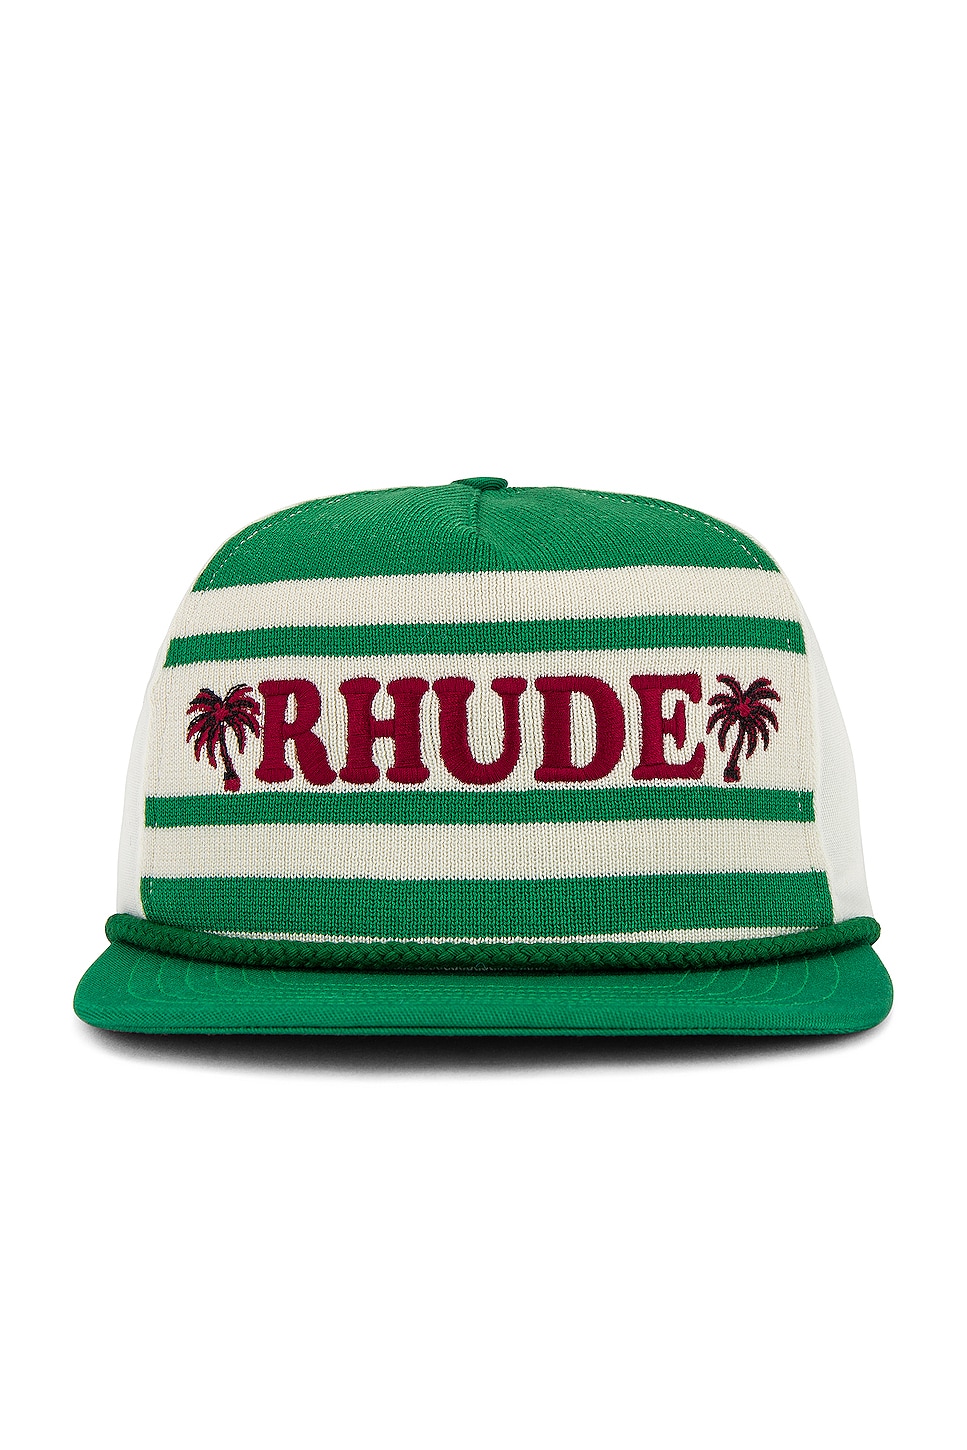 Rhude Beach Club Hat in Green